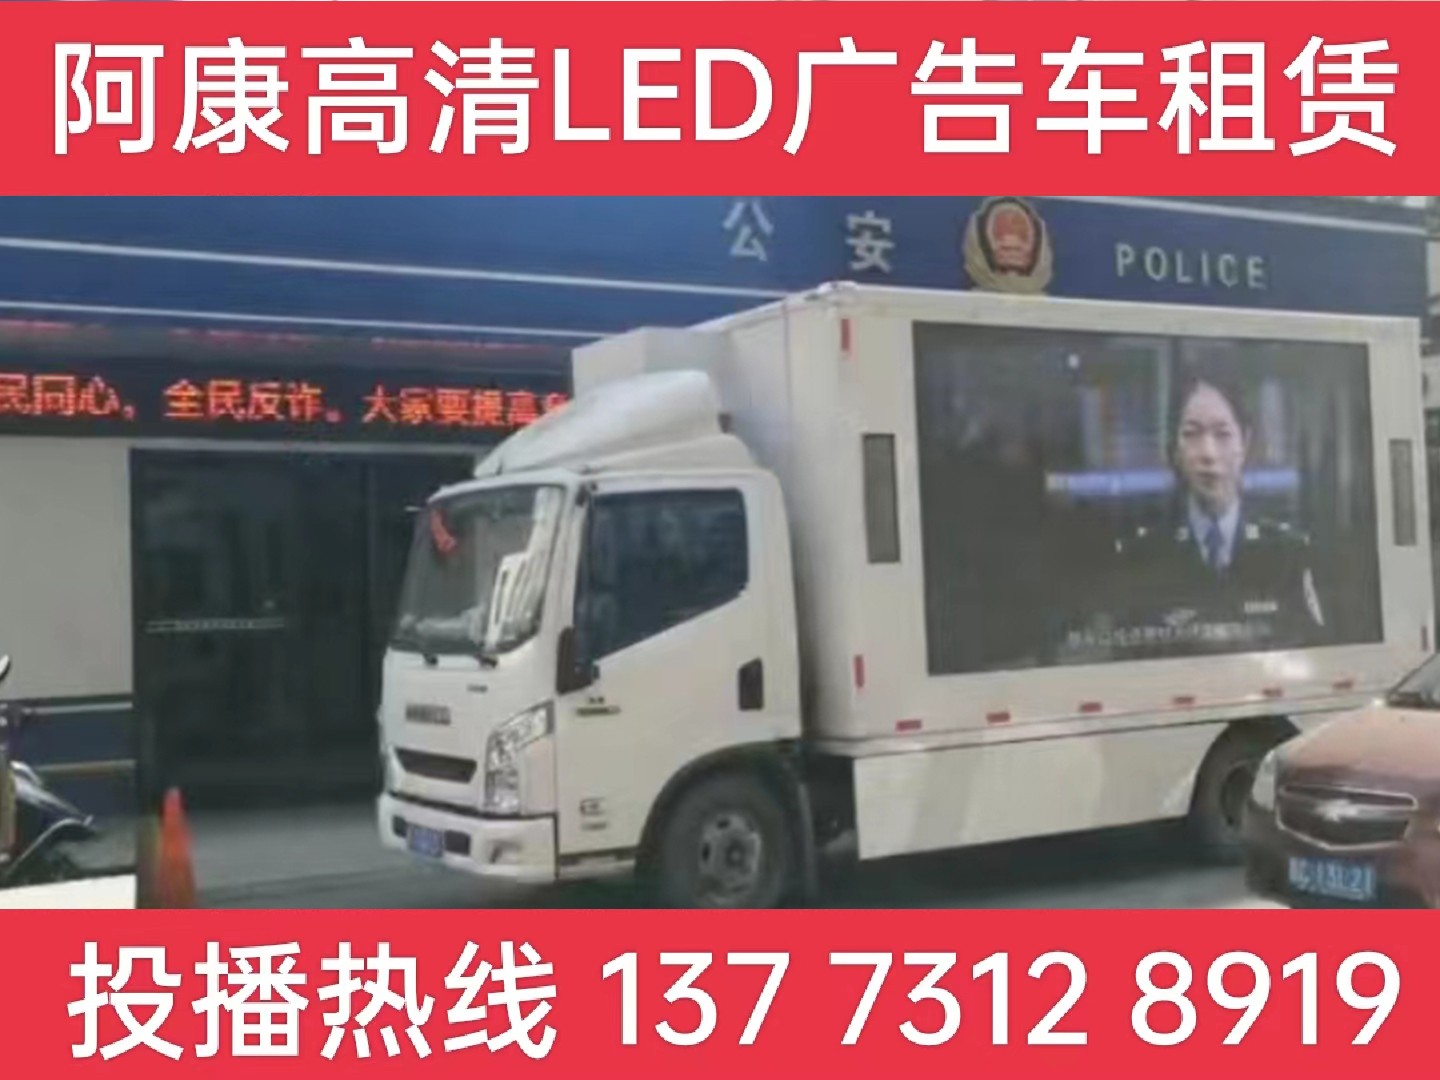 无锡LED广告车租赁-反诈宣传